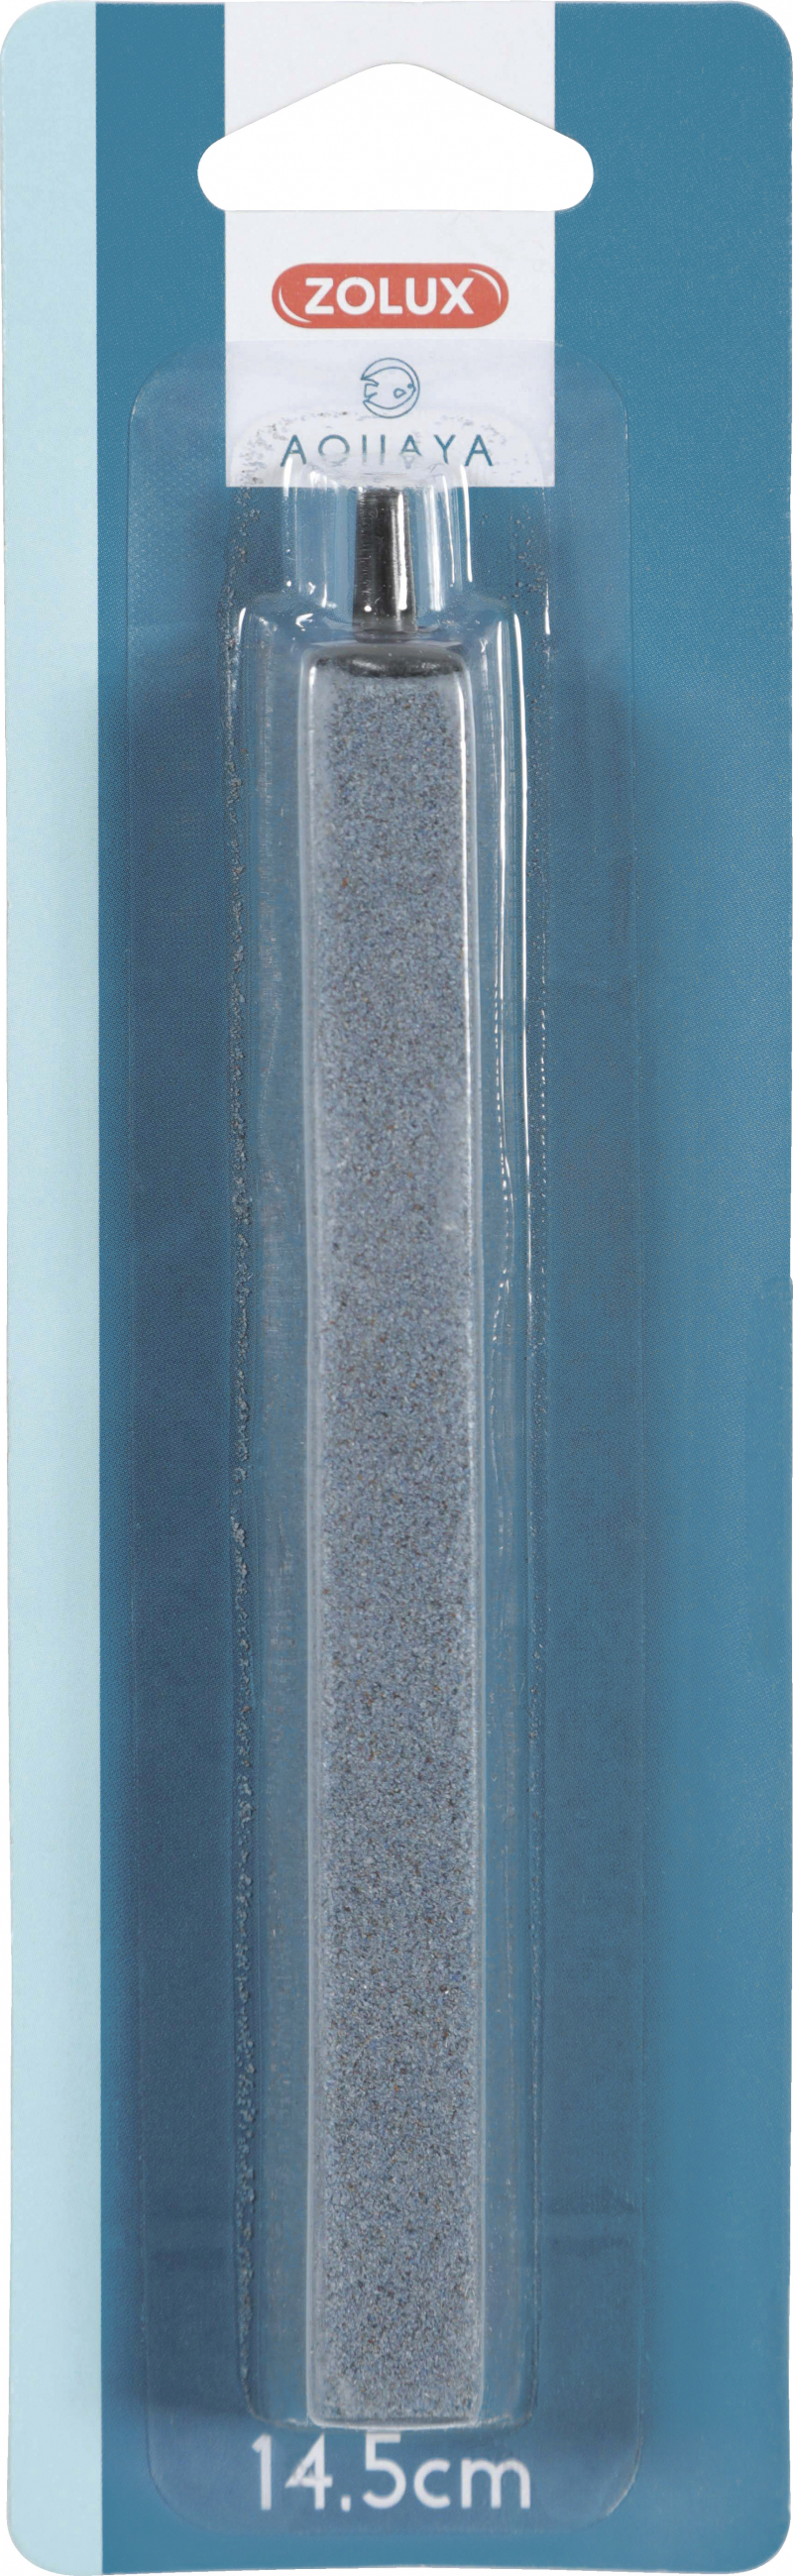 Piedra difusora Nanolife Zolux - barra 14,5 cm